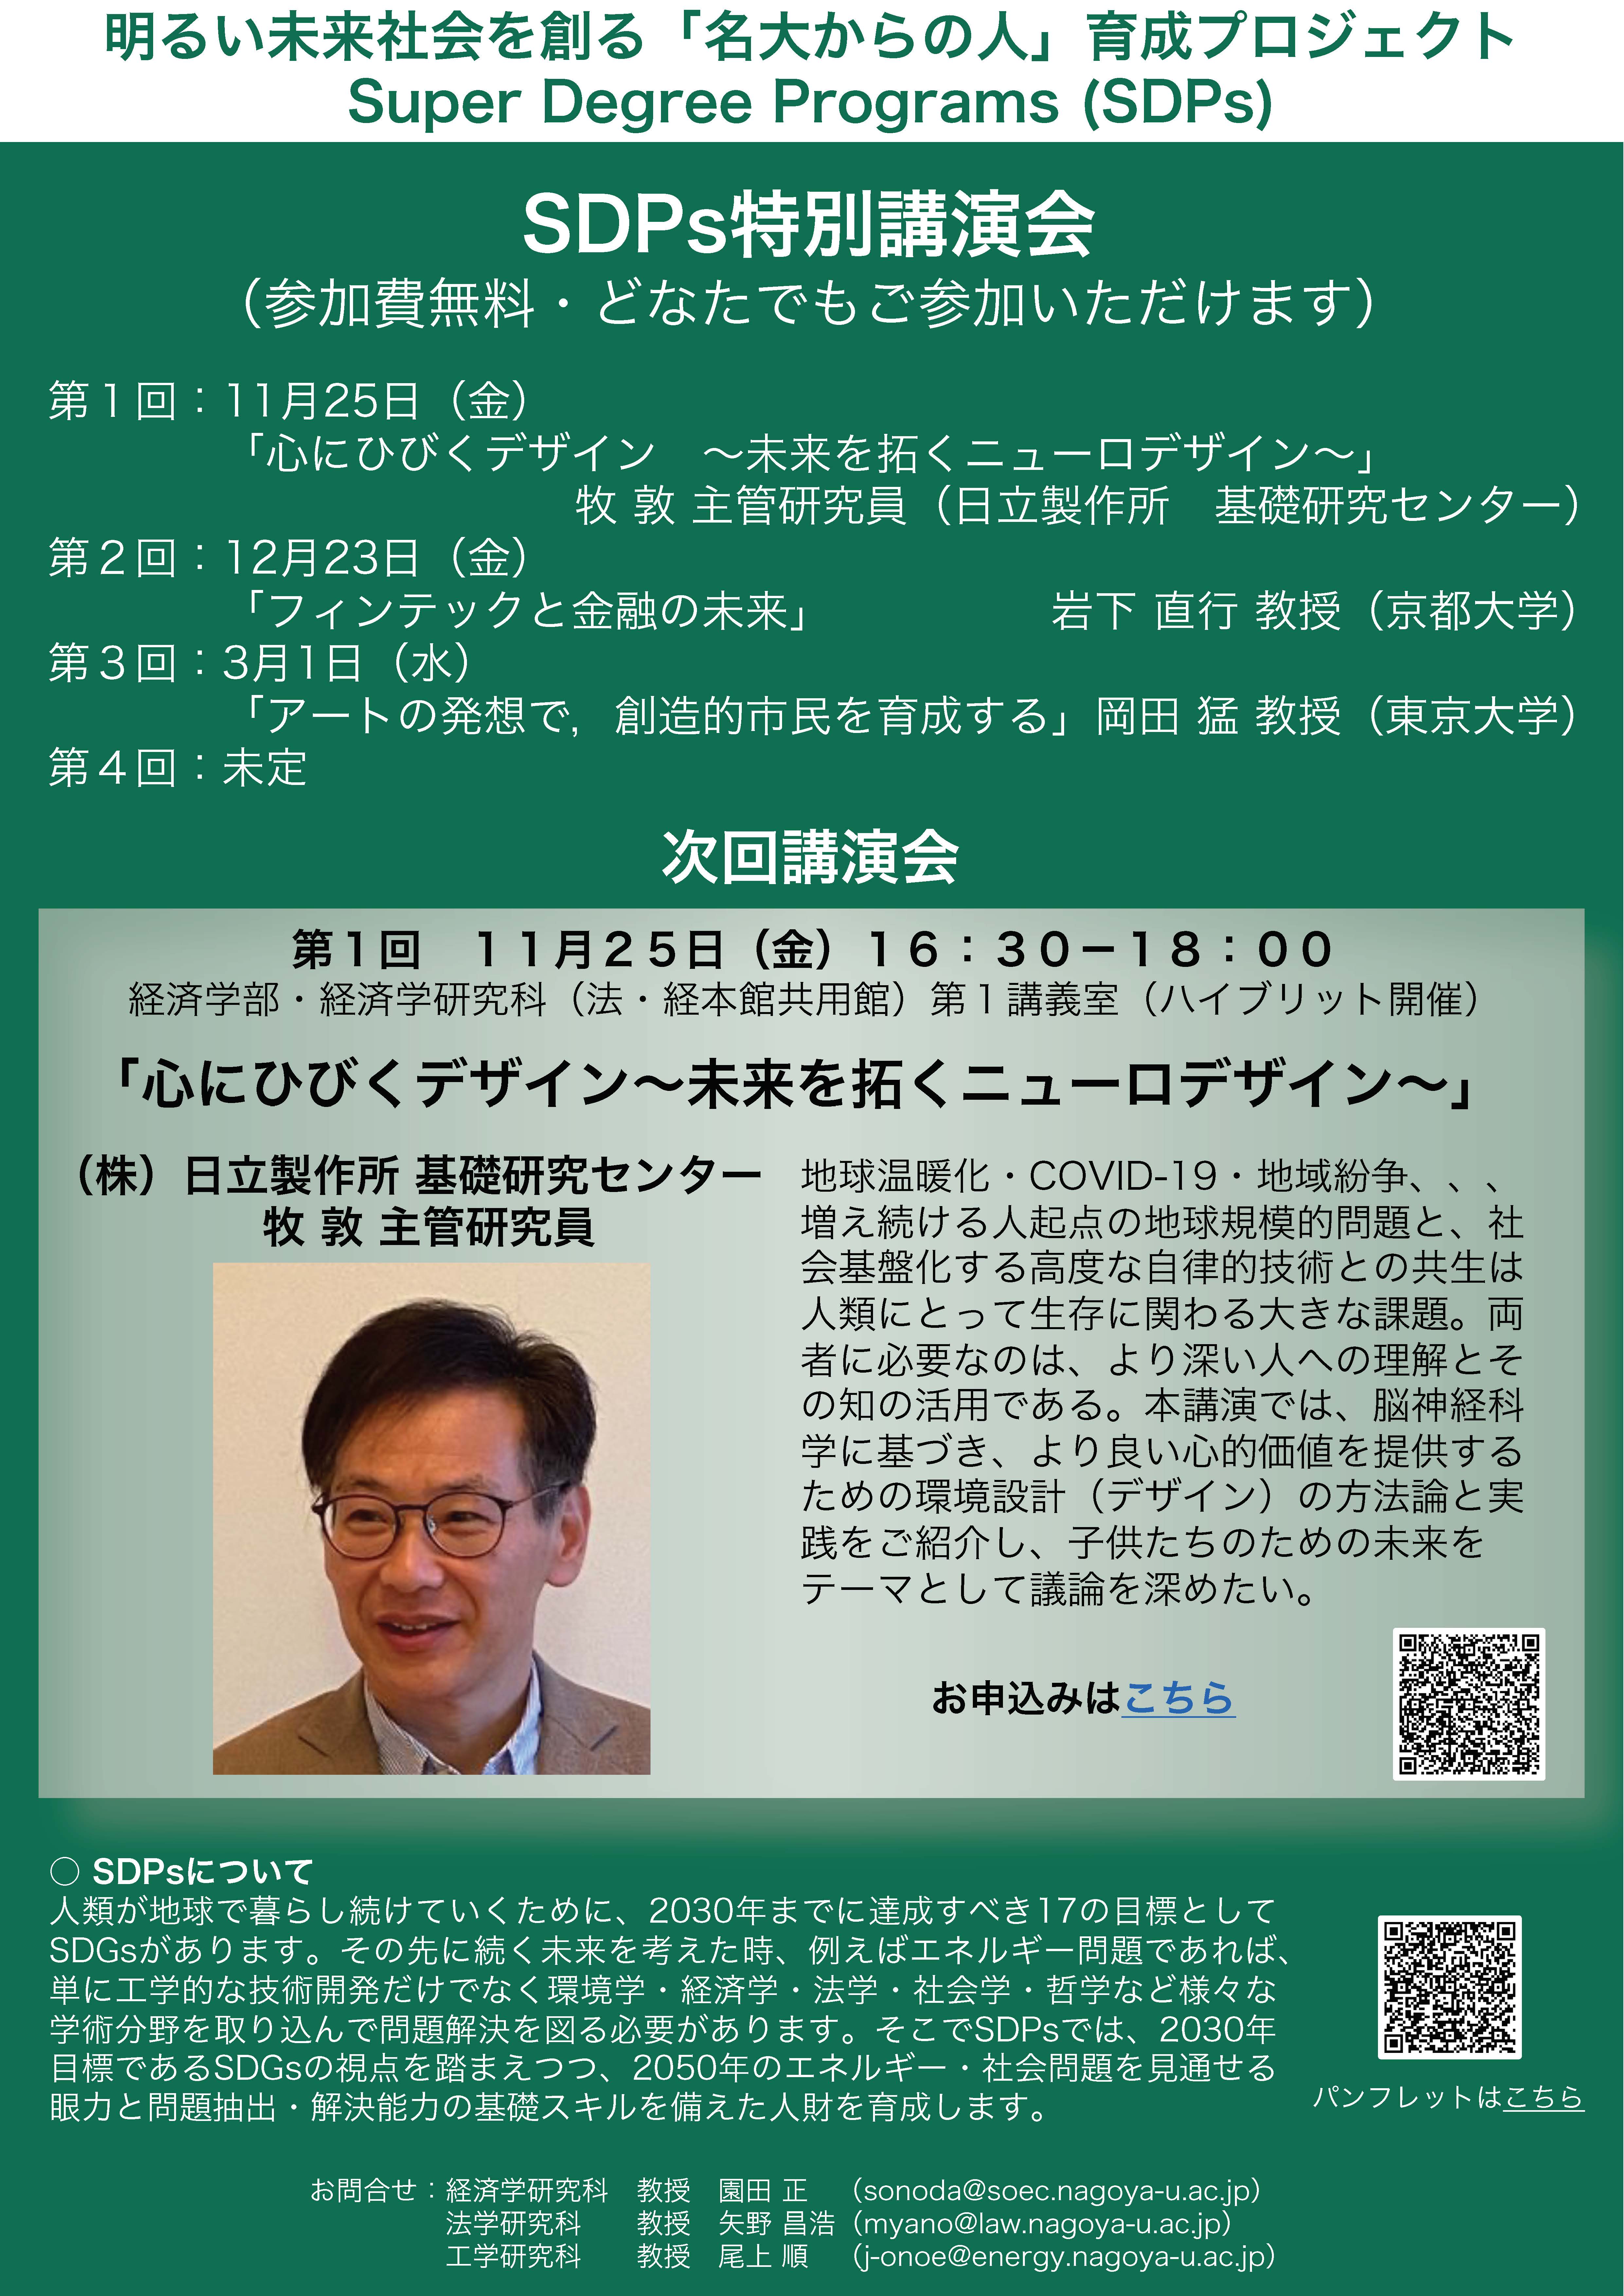 名古屋大学SDPs特別講演会「心にひびくデザイン～未来を拓くニューロデザイン～」